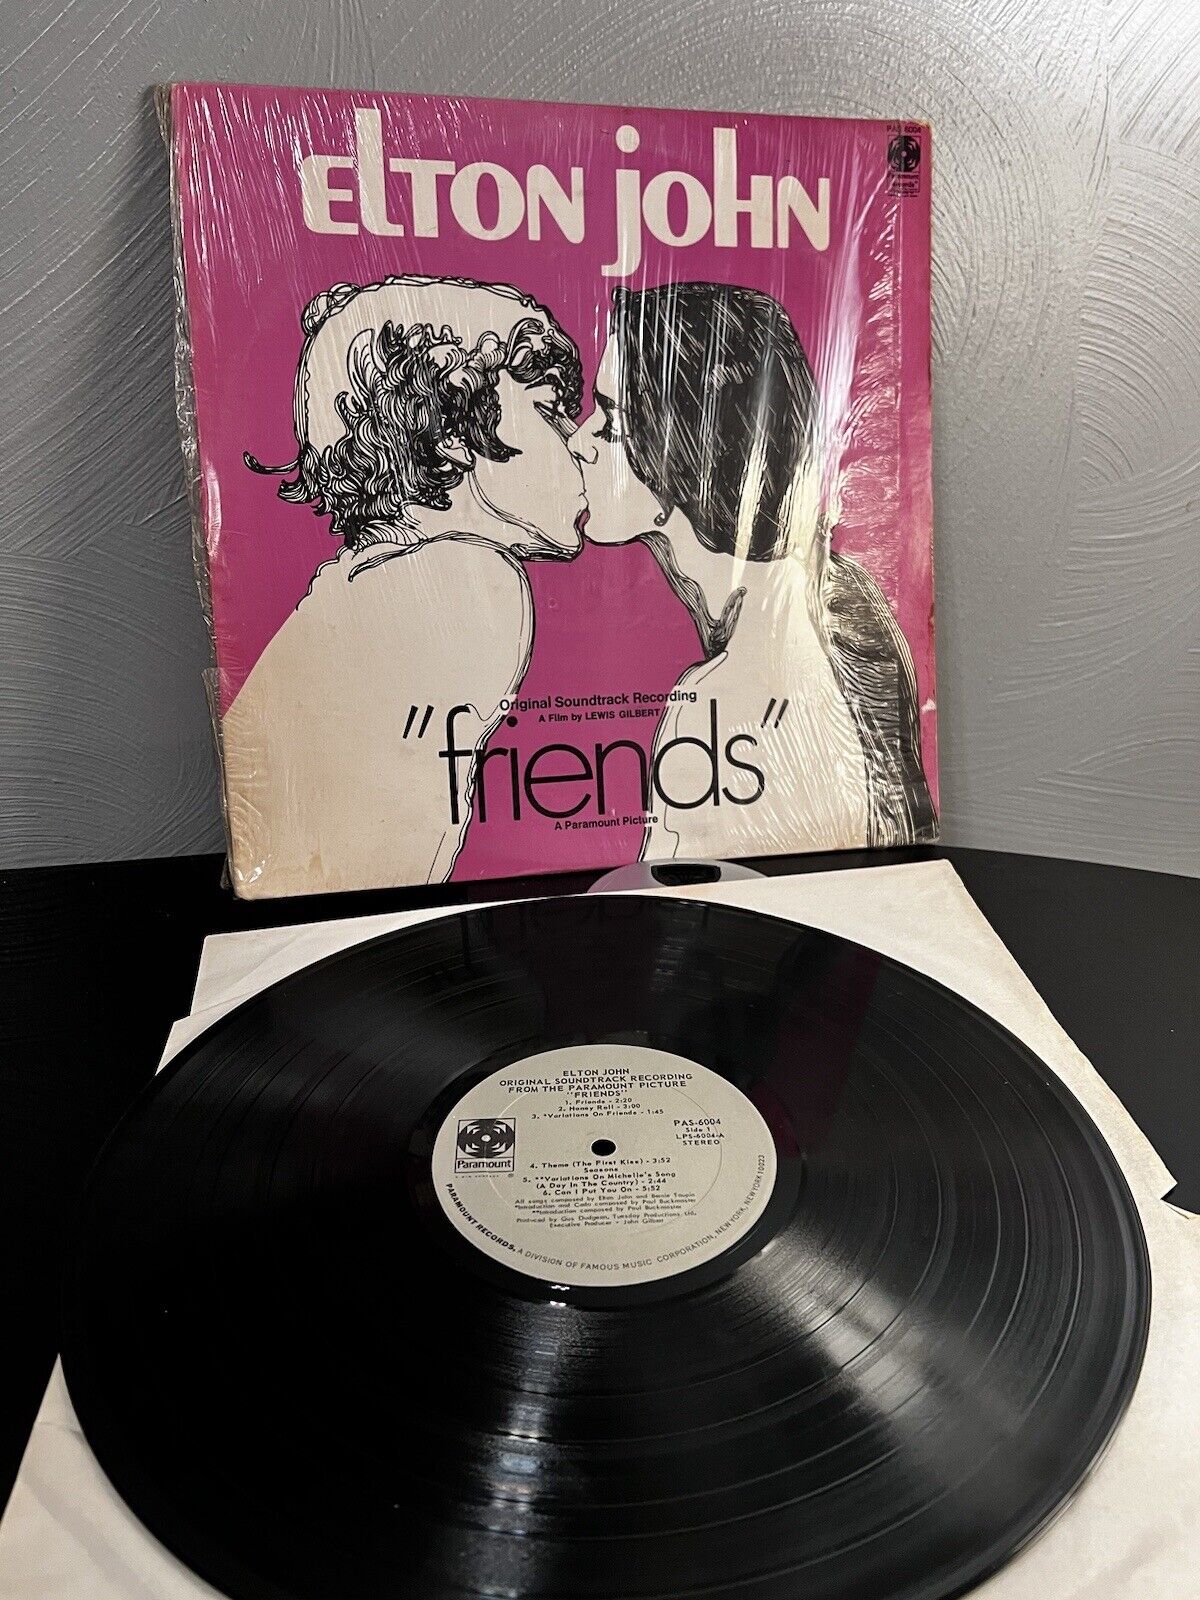 VINTAGE ELTON JOHN - “friends” ost LP 1971 Paramount PAS6004 Vinyl